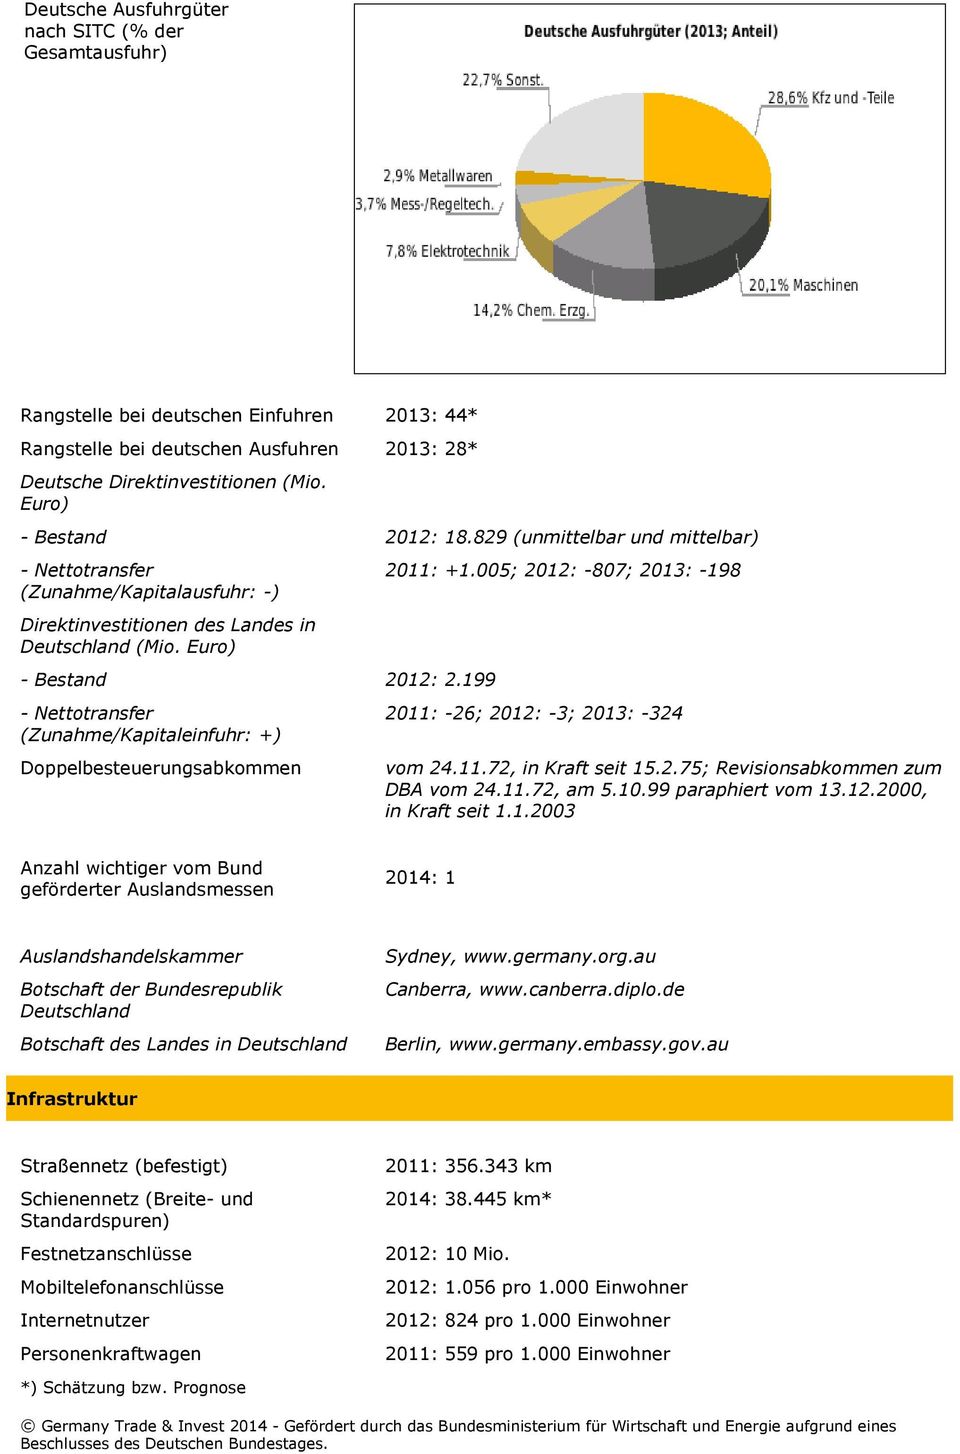 Euro) - Bestand 2012: 2.199 - Nettotransfer (Zunahme/Kapitaleinfuhr: +) Doppelbesteuerungsabkommen 2011: -26; 2012: -3; 2013: -324 vom 24.11.72, in Kraft seit 15.2.75; Revisionsabkommen zum DBA vom 24.